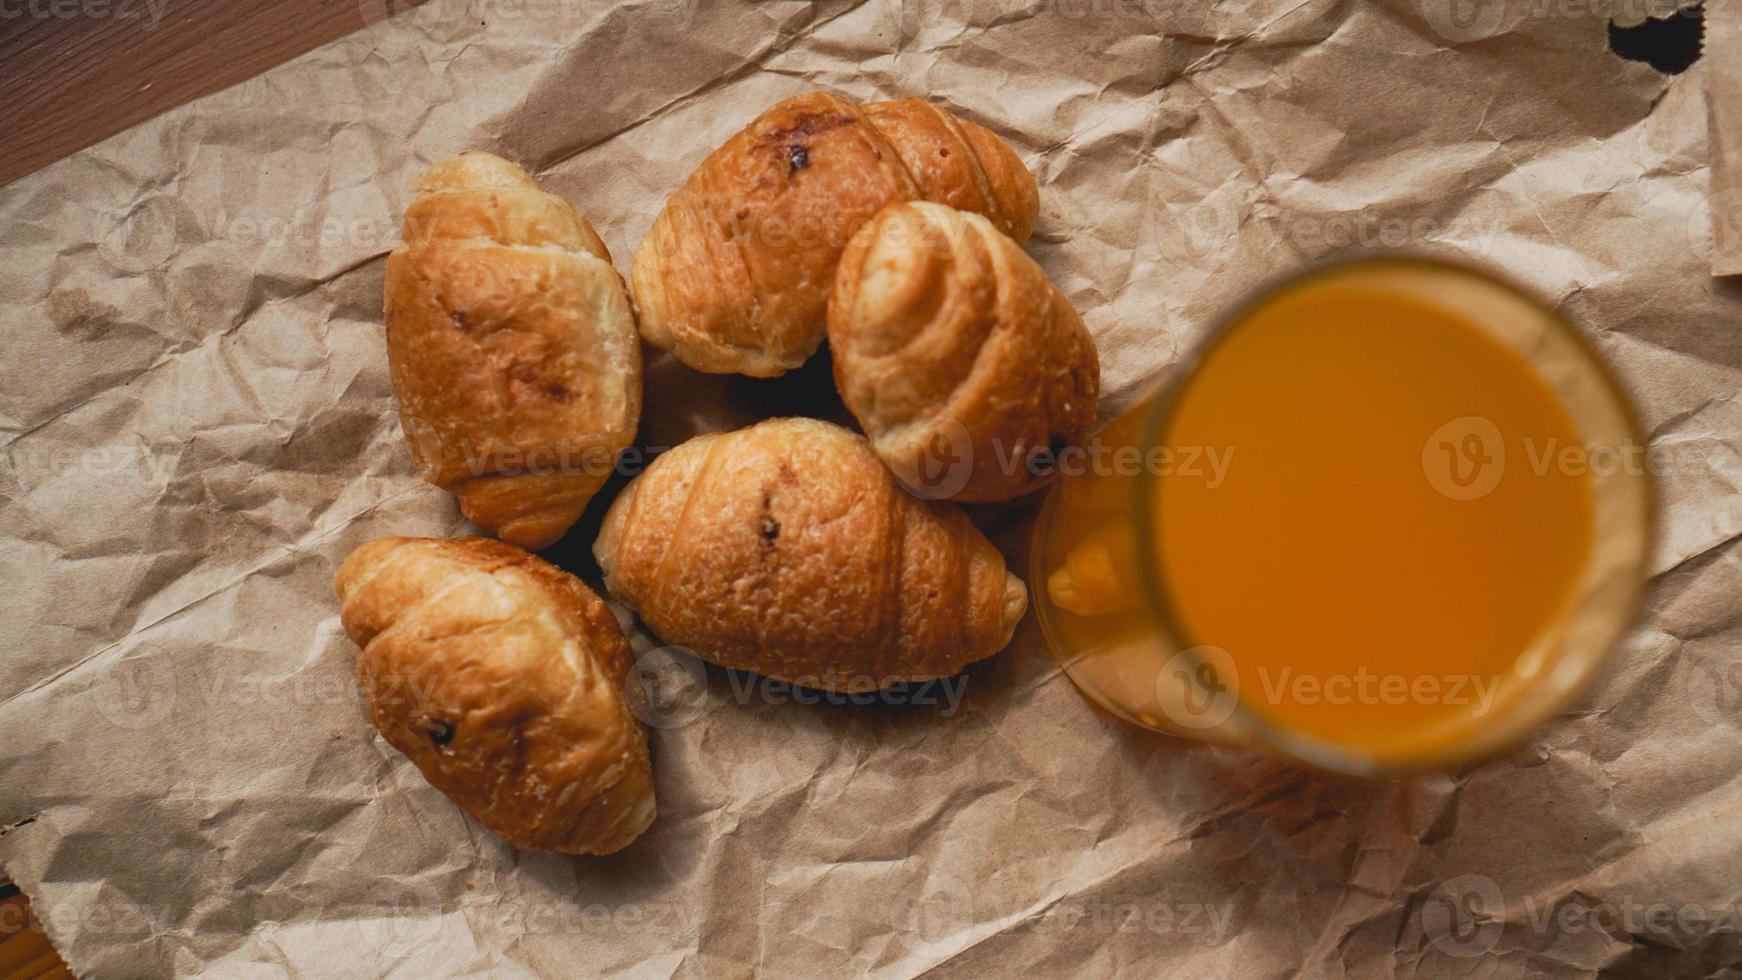 versgebakken croissants met jus d'orange op kraftpapier foto